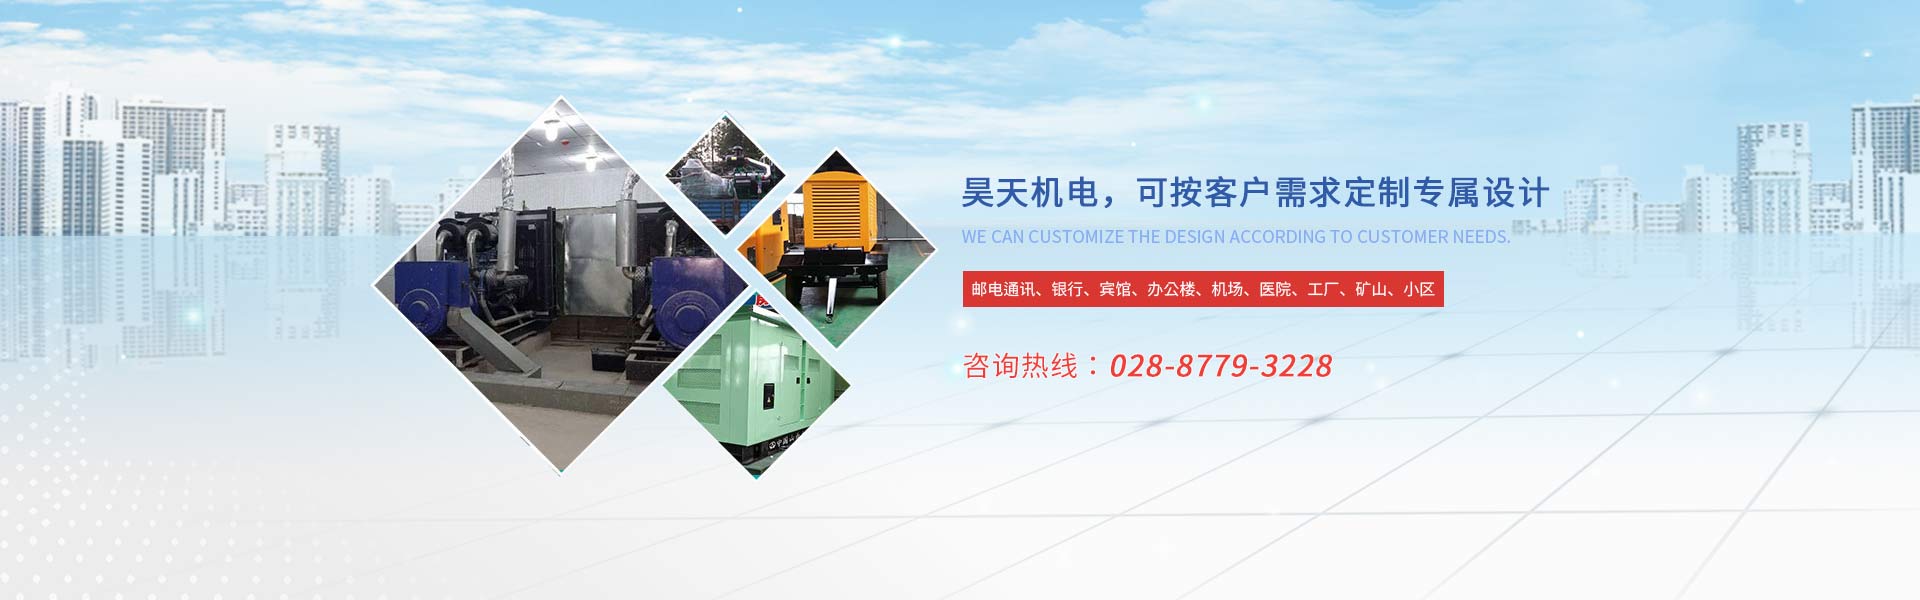 我们推荐400KW上海乾能柴油发电机组一般耗量是多少_发电机组配件相关-成都协力昊天机电设备有限公司